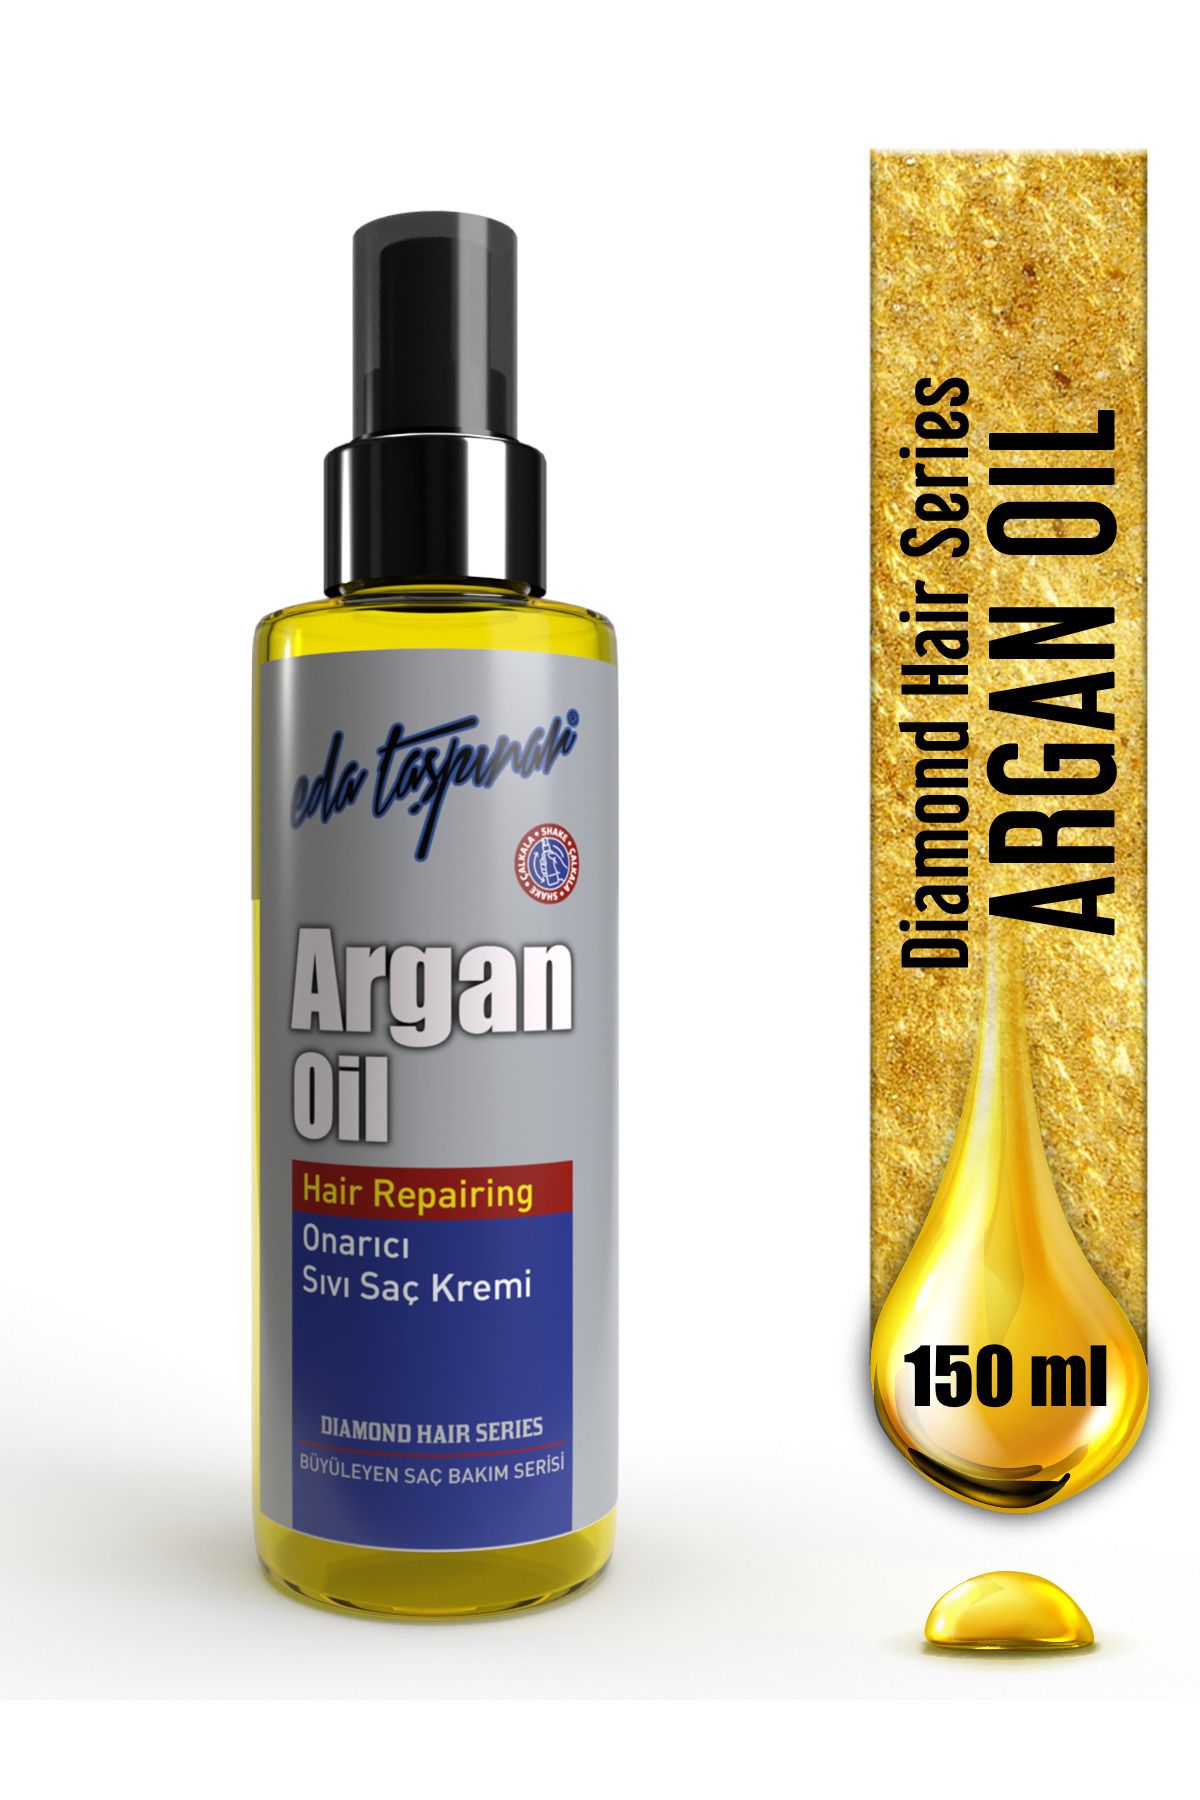 Eda Taşpınar Argan Yağlı Onarıcı Sıvı Saç Kremi - 150ml. (egx76)